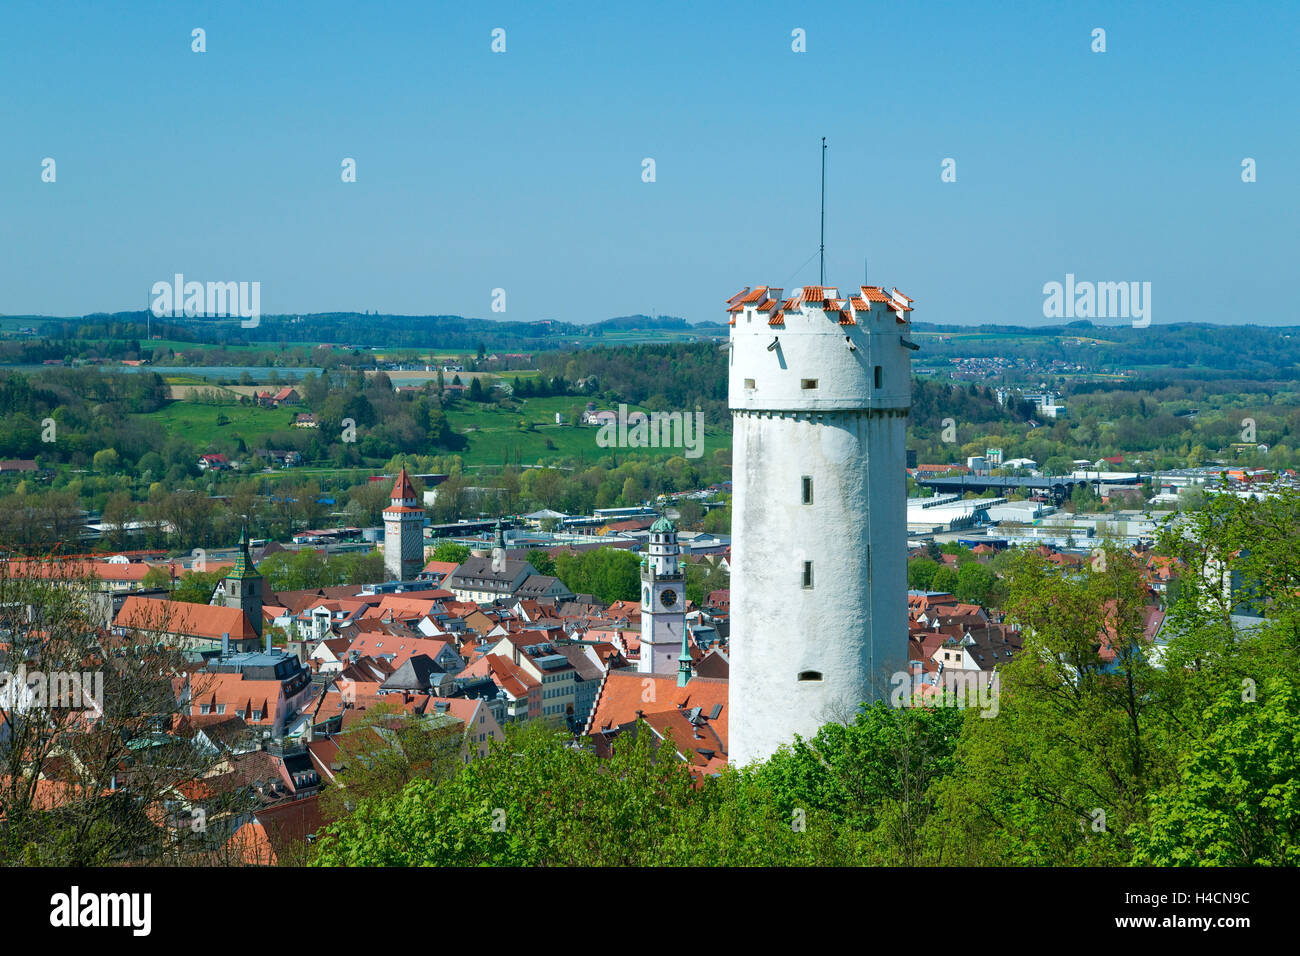 Alemania, Baden-Wurttemberg, castillo de los cuervos, vista desde el castillo en la ciudad Veits Foto de stock